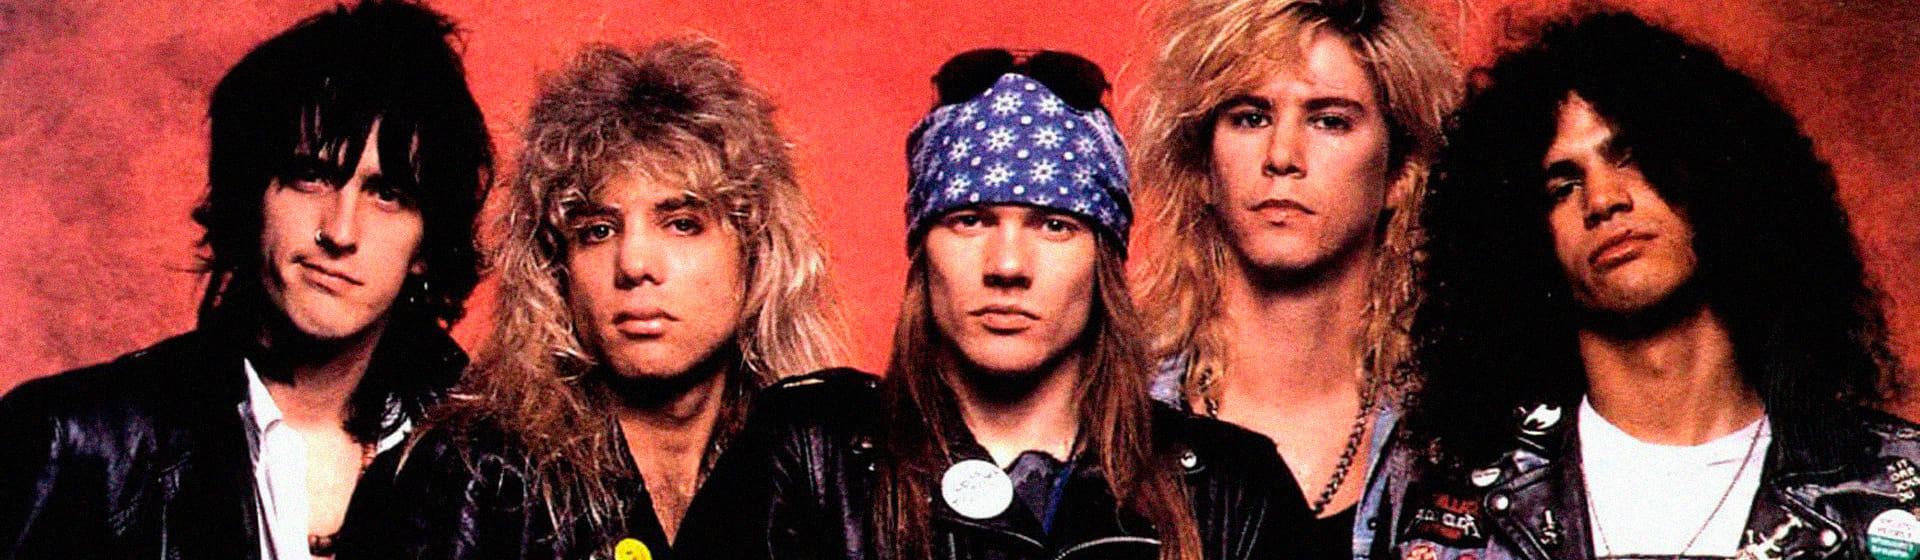 Guns-N-Roses - Мерч и одежда с атрибутикой